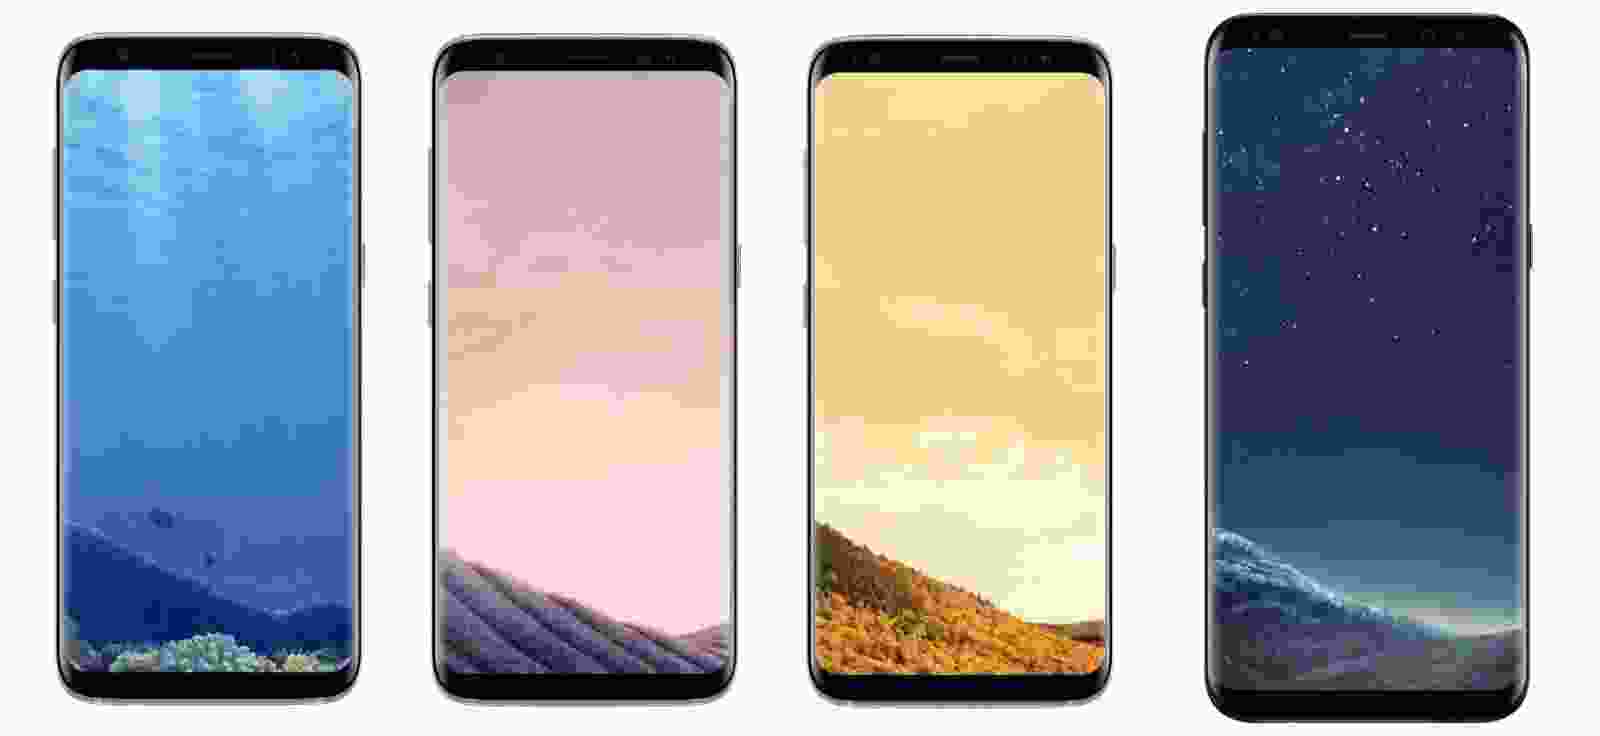 Lộ ảnh báo chí Galaxy S10 và S10 Plus: 3 camera nằm ngang, màn hình lỗ đục,  màu gradient mới